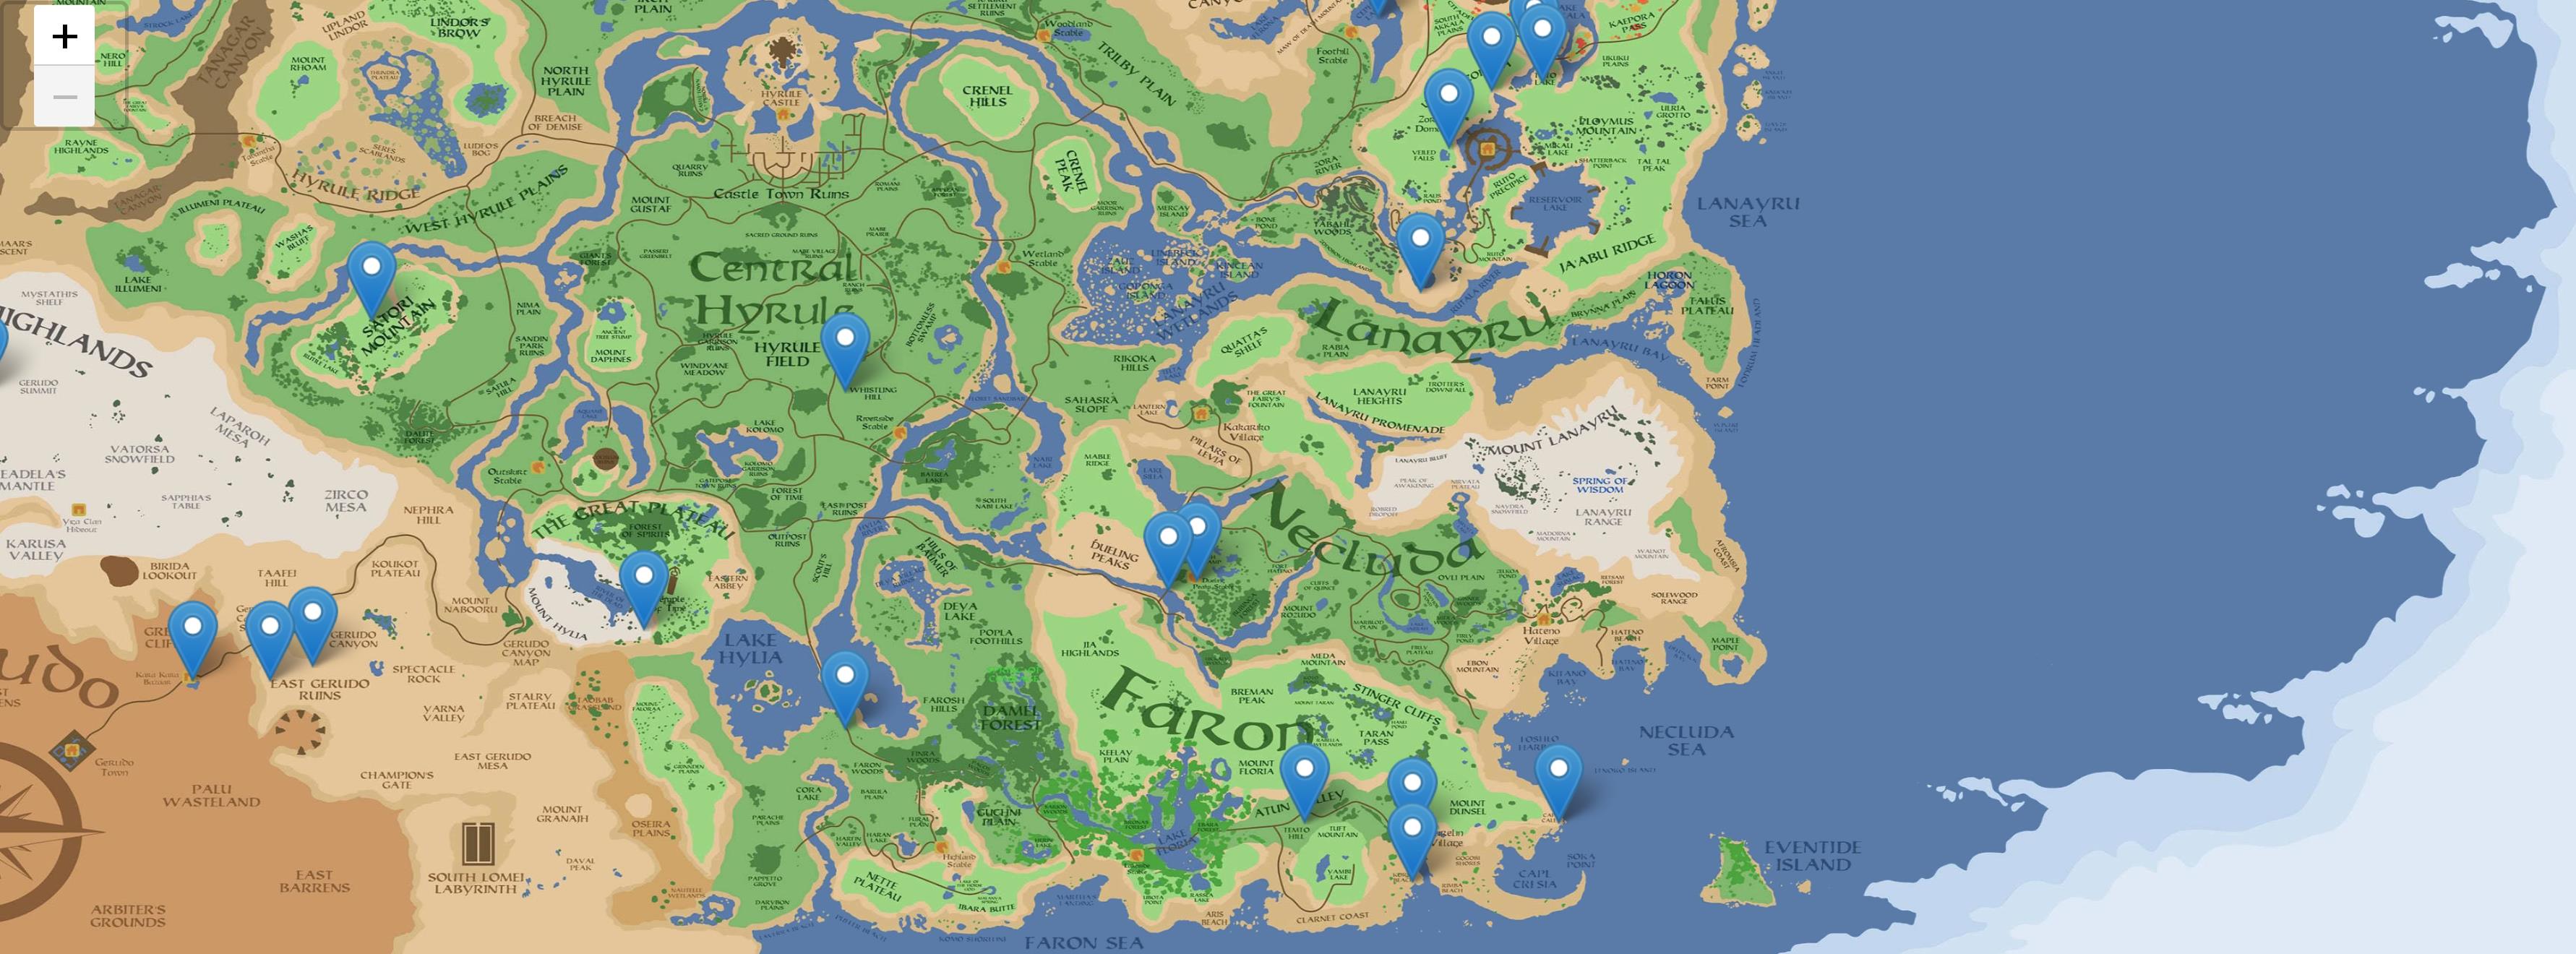 网友开发了《塞尔达传说:荒野之息》的全景地图